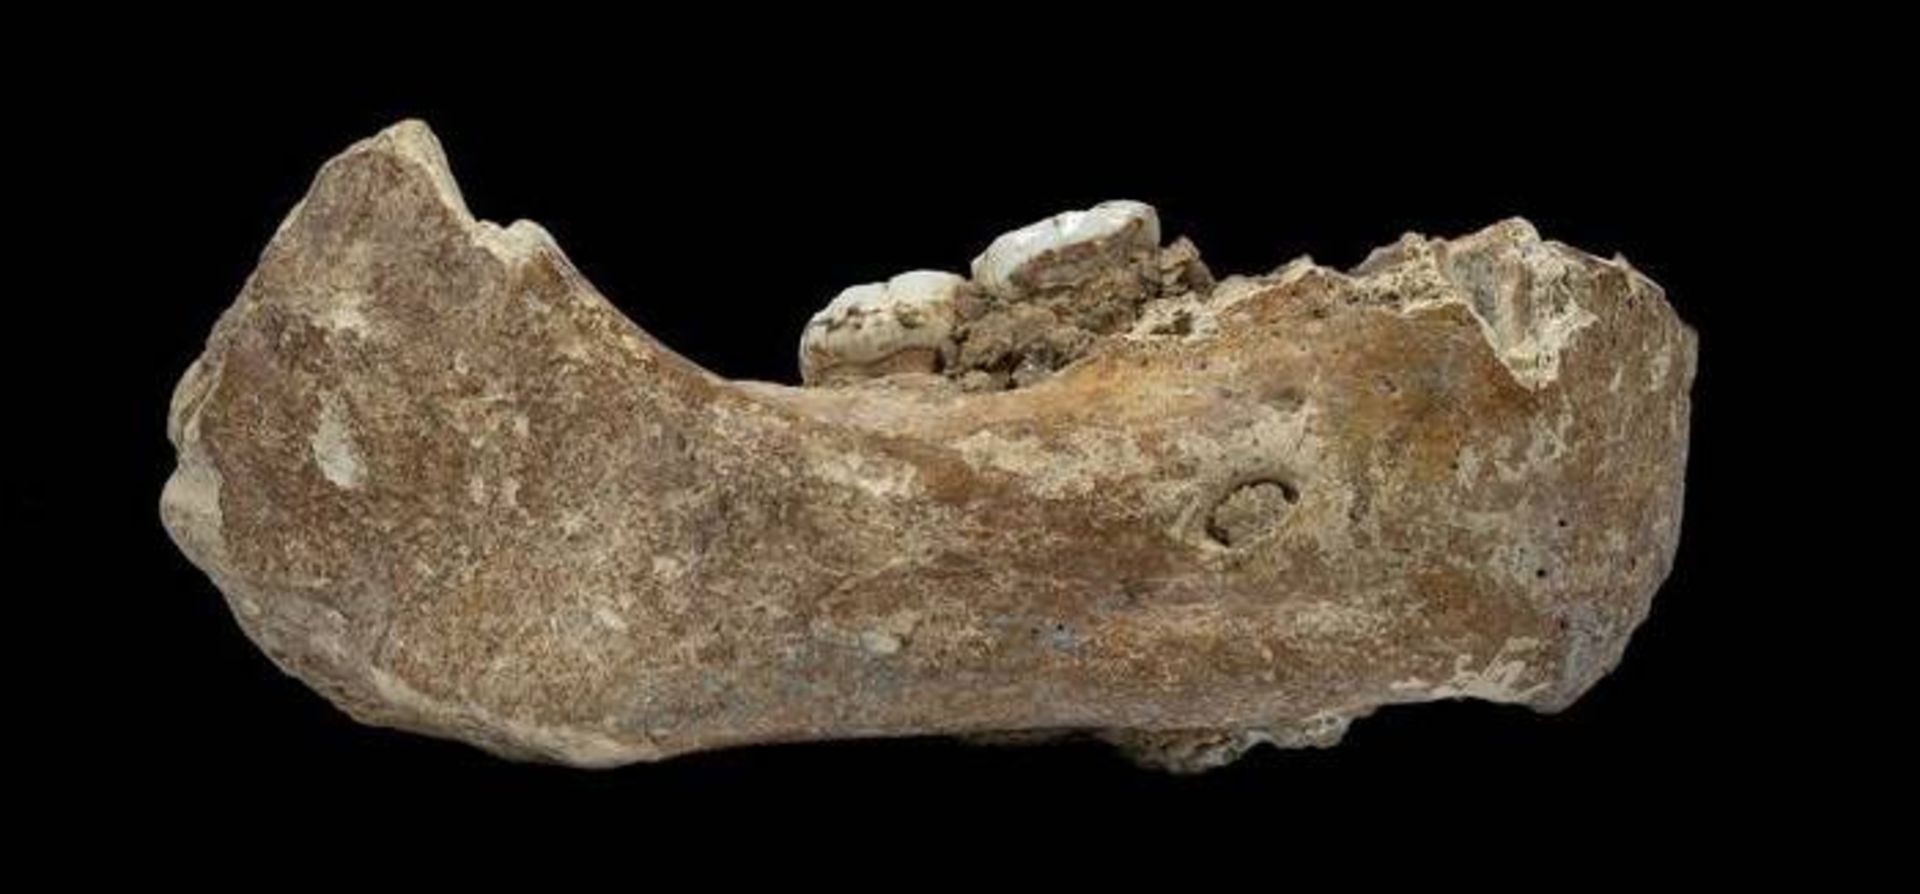 استخوان آرواره انسان تبار دنیسووا  / Denisovan jawbone